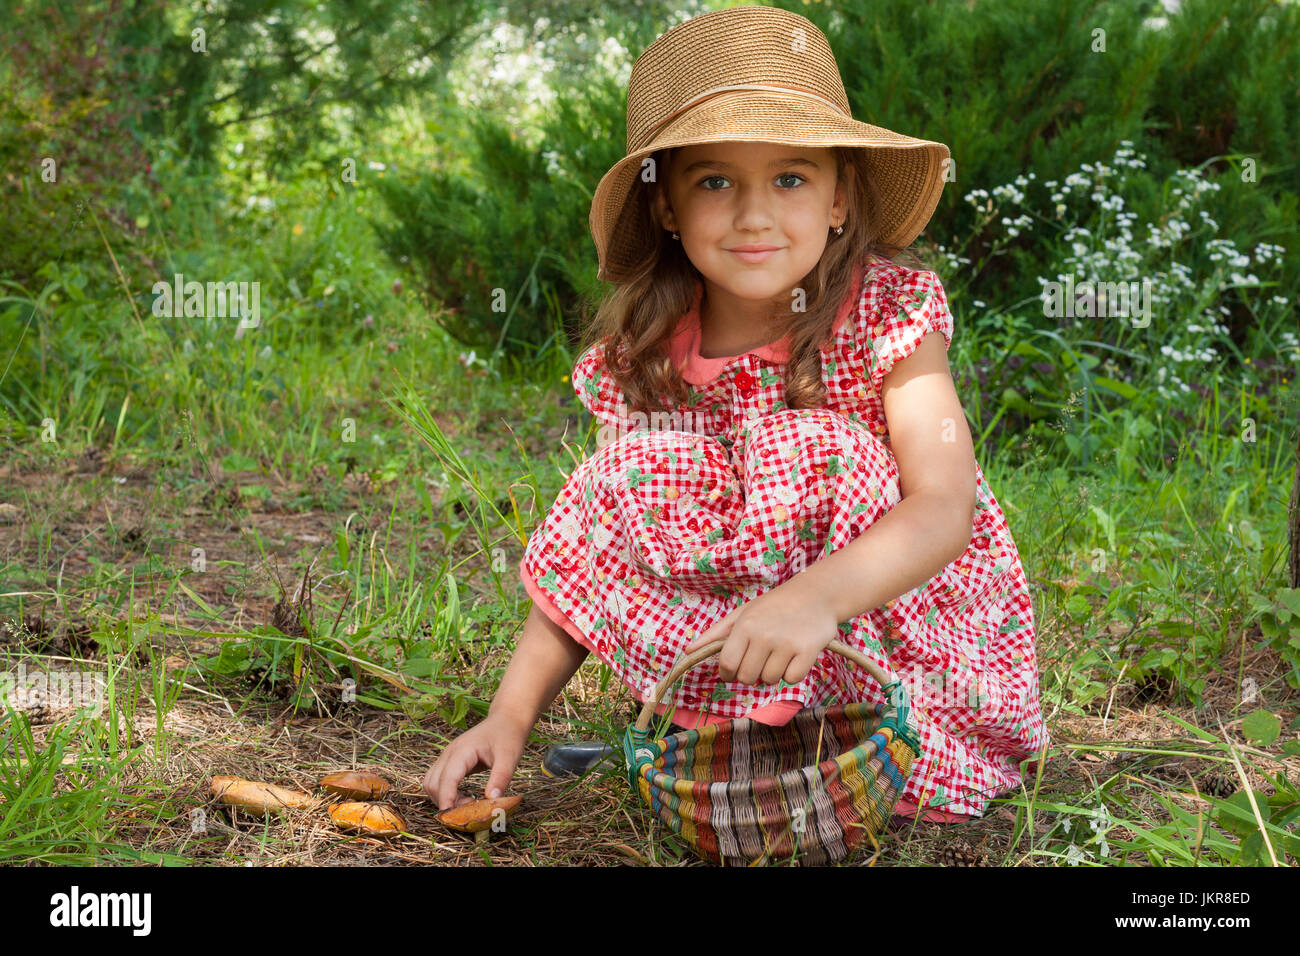 Adorabili poco sei anno vecchia ragazza russo nel cappello di vimini con cestello in mano volentieri la raccolta di funghi Suillus, semi-seduto e guardando la fotocamera W Foto Stock